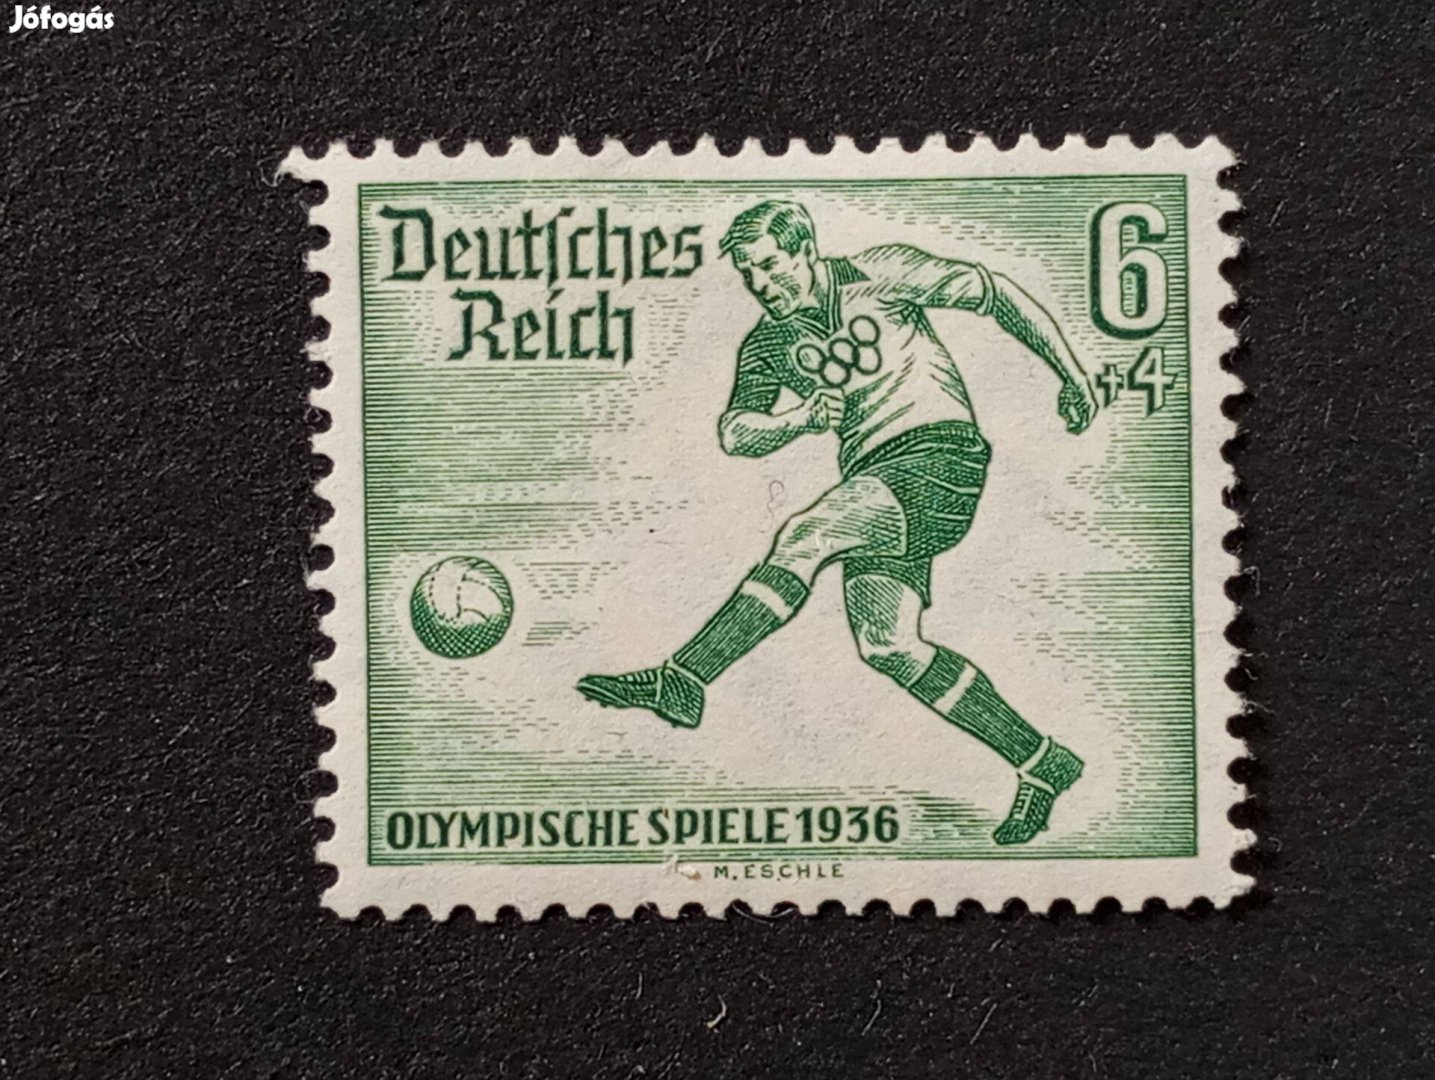 Deutsches Reich 6+4 Pfg. bélyeg 1936-os olimpiai játékok - Berlin